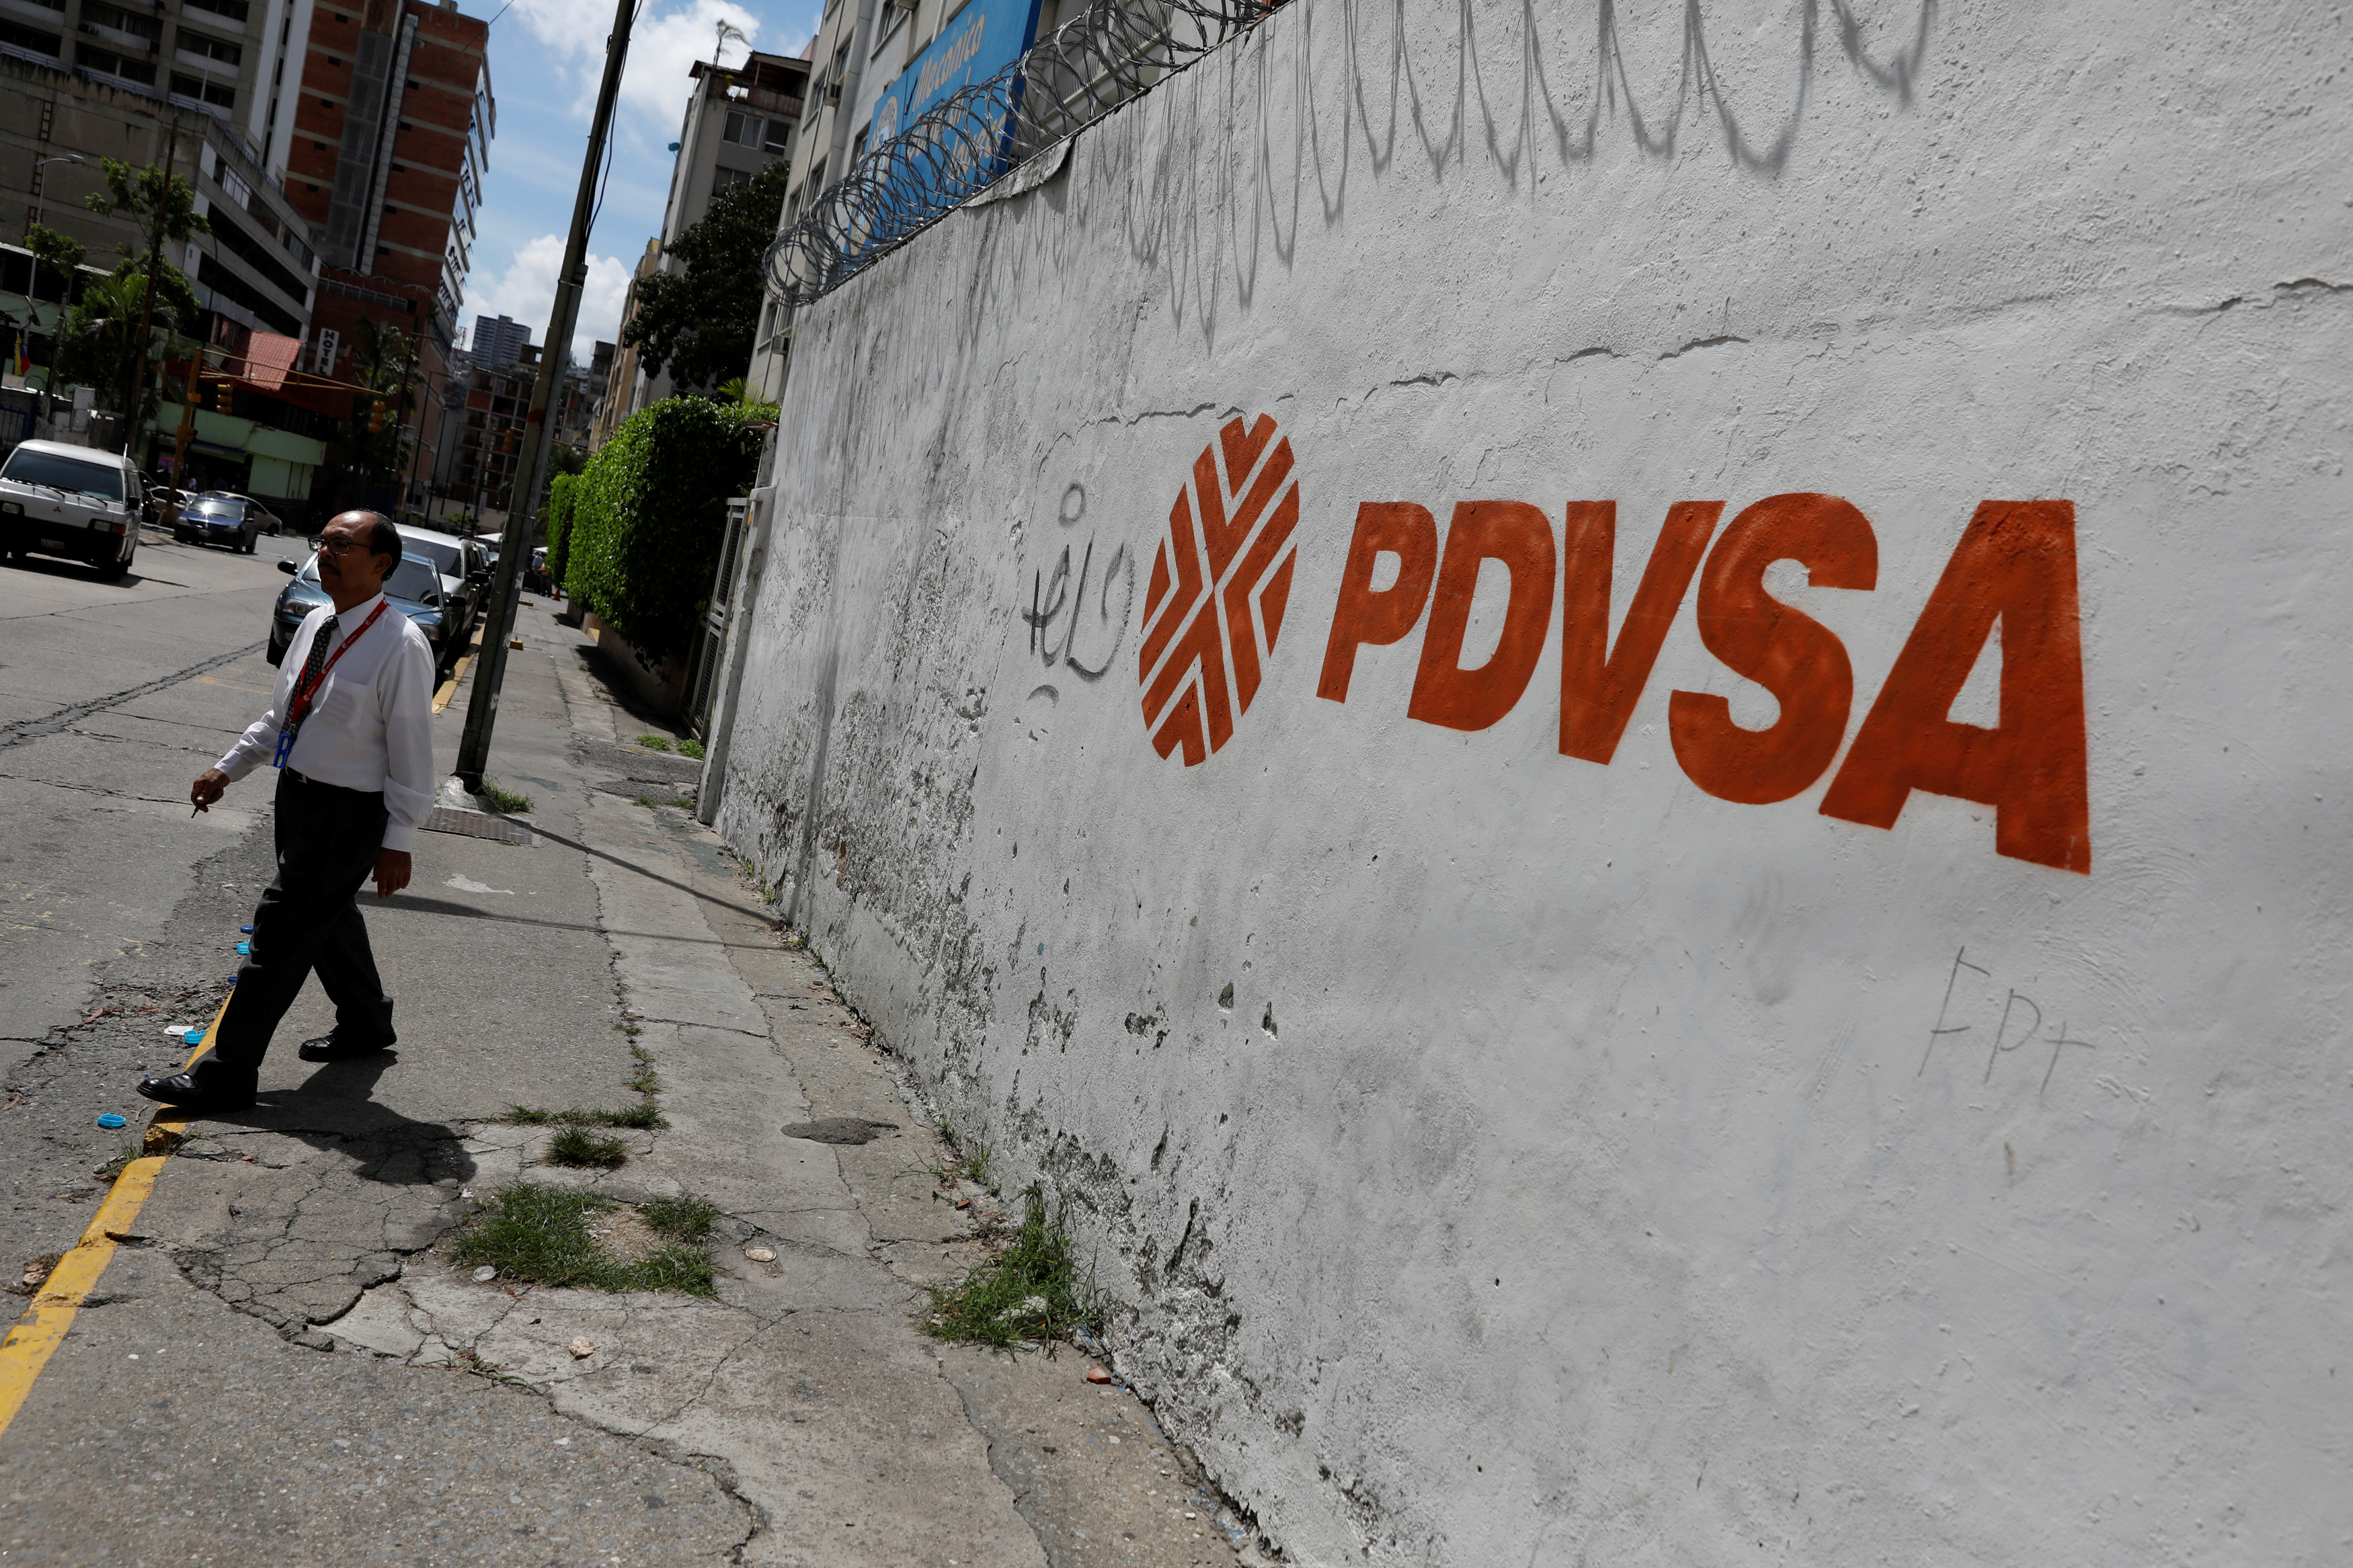 El chavismo quiere privatizar en secreto con su nueva ley, según expertos